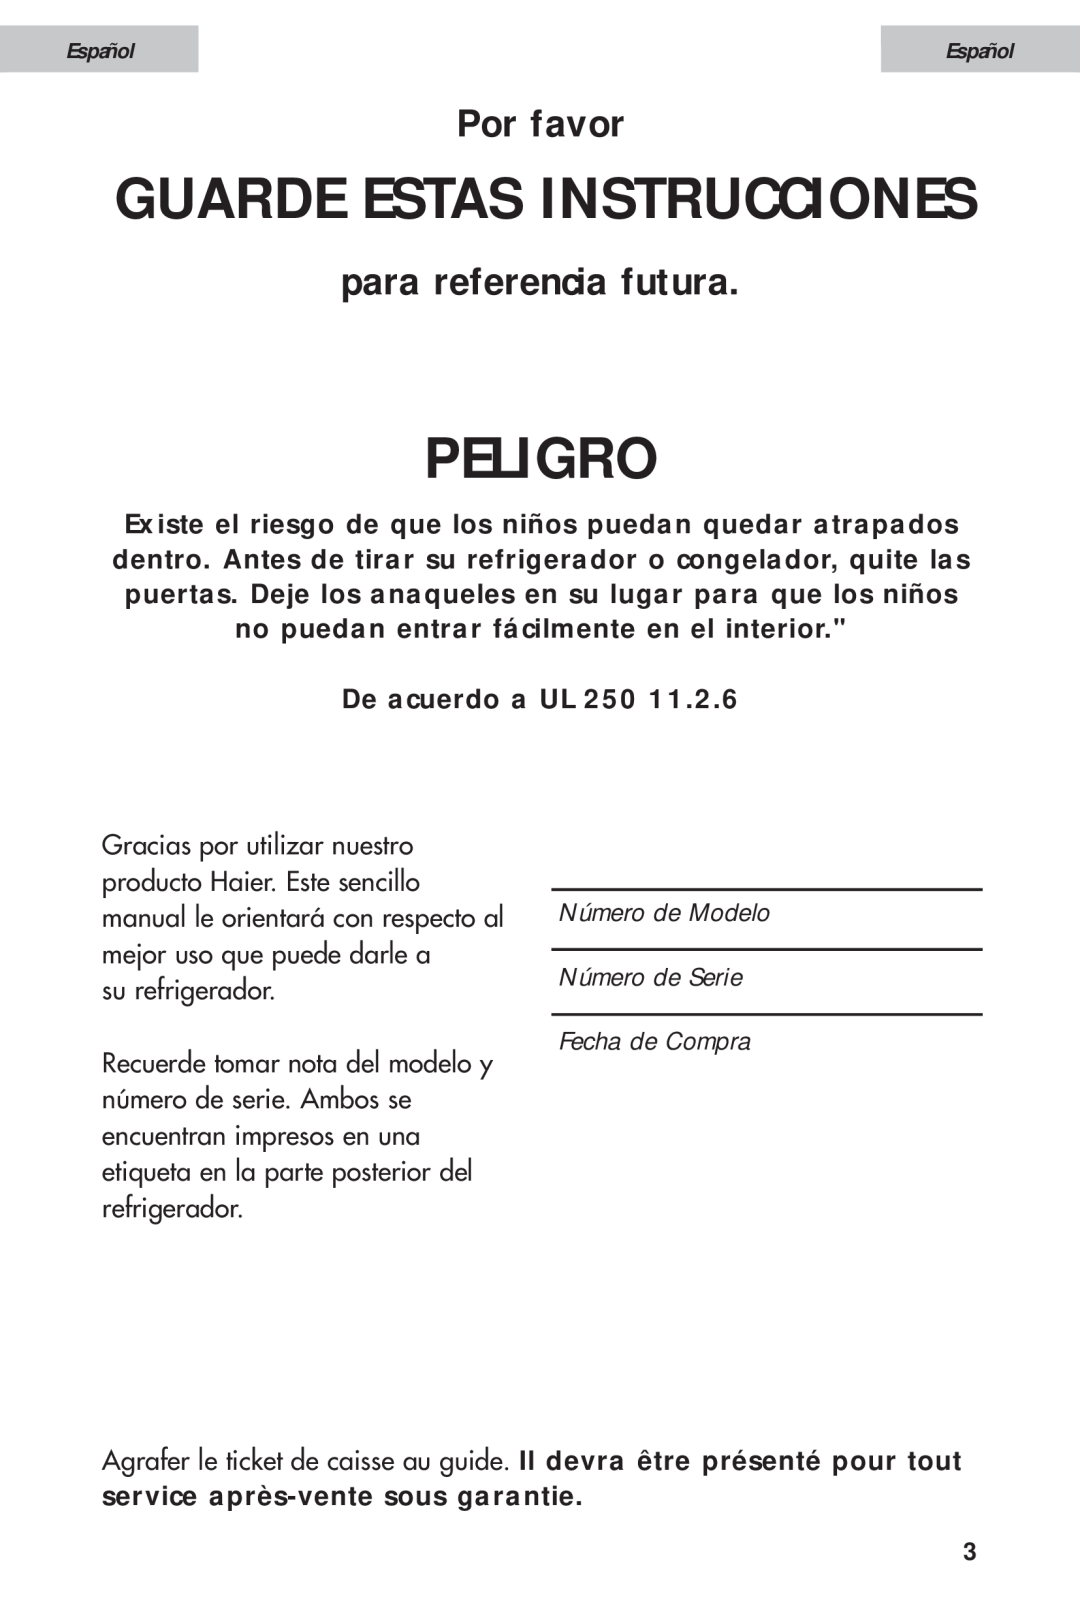 Haier HDE11WNA Peligro, Guarde Estas Instrucciones, Por favor, para referencia futura, De acuerdo a UL 250, Español 